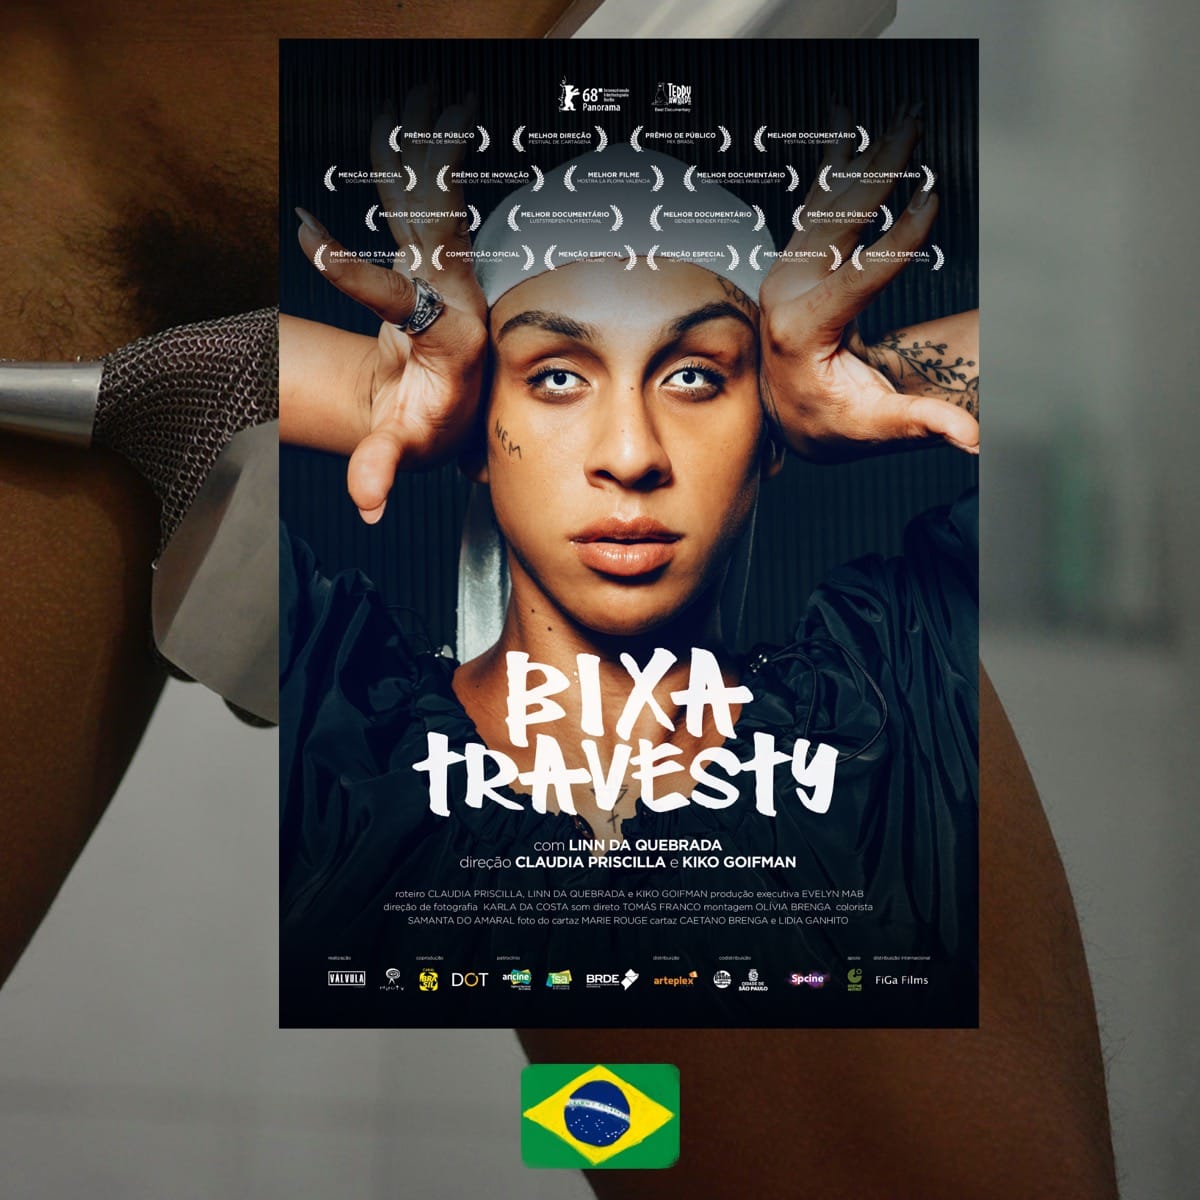 Bixa Travesty, Tranny Fag, movie poster